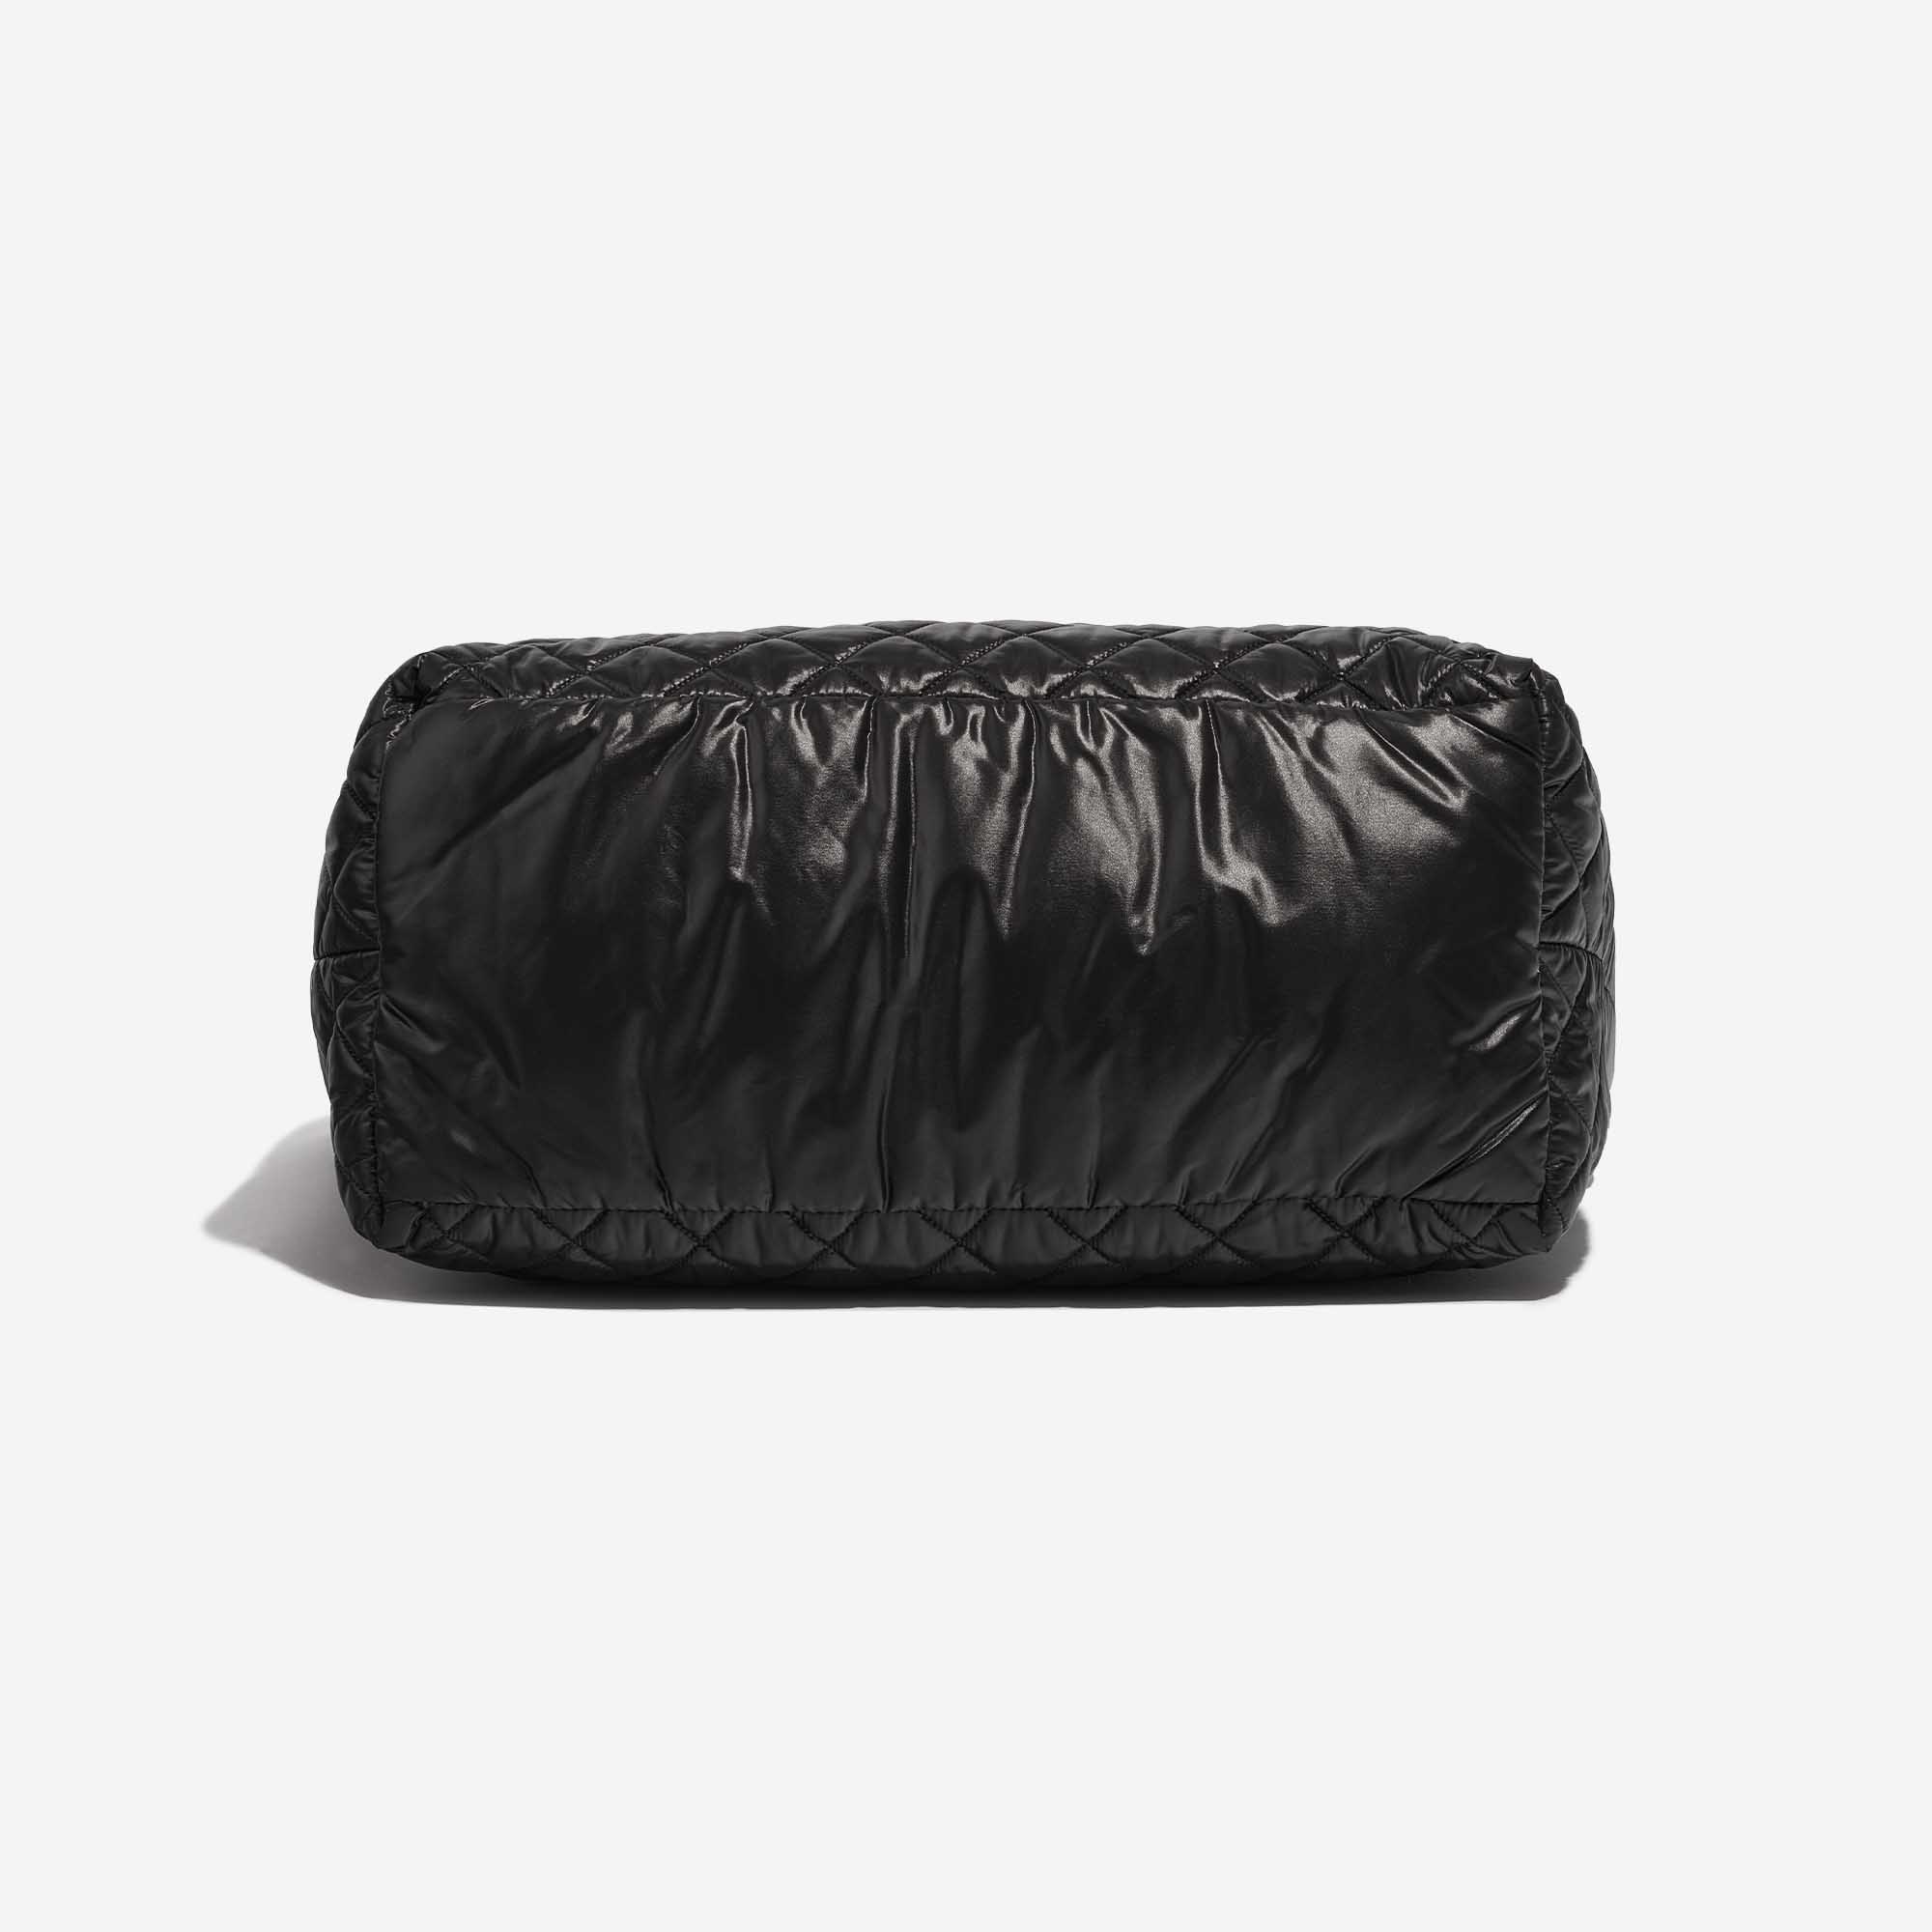 Sac Chanel d'occasion Cocoon Shopper Synthétique Noir Fond Noir | Vendez votre sac de créateur sur Saclab.com